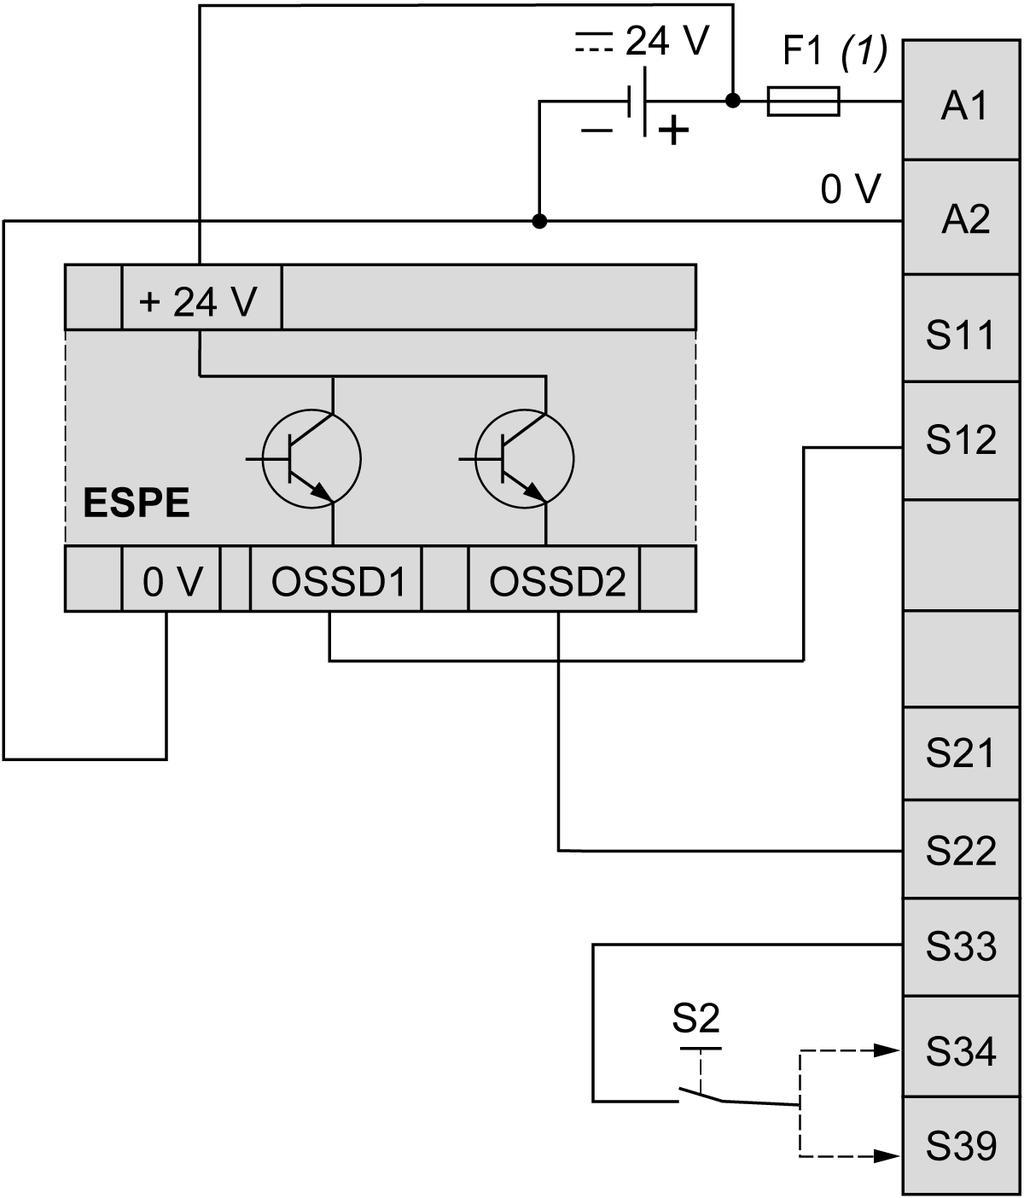 TM3SAFL5R / TM3SAFL5RG Fiação de equipamento protetor eletrosensível (ESPE) Esta imagem mostra um exemplo da fiação de ESPE (saídas do tipo 4, IEC/EN 61496-1) para as entradas do módulo de segurança: